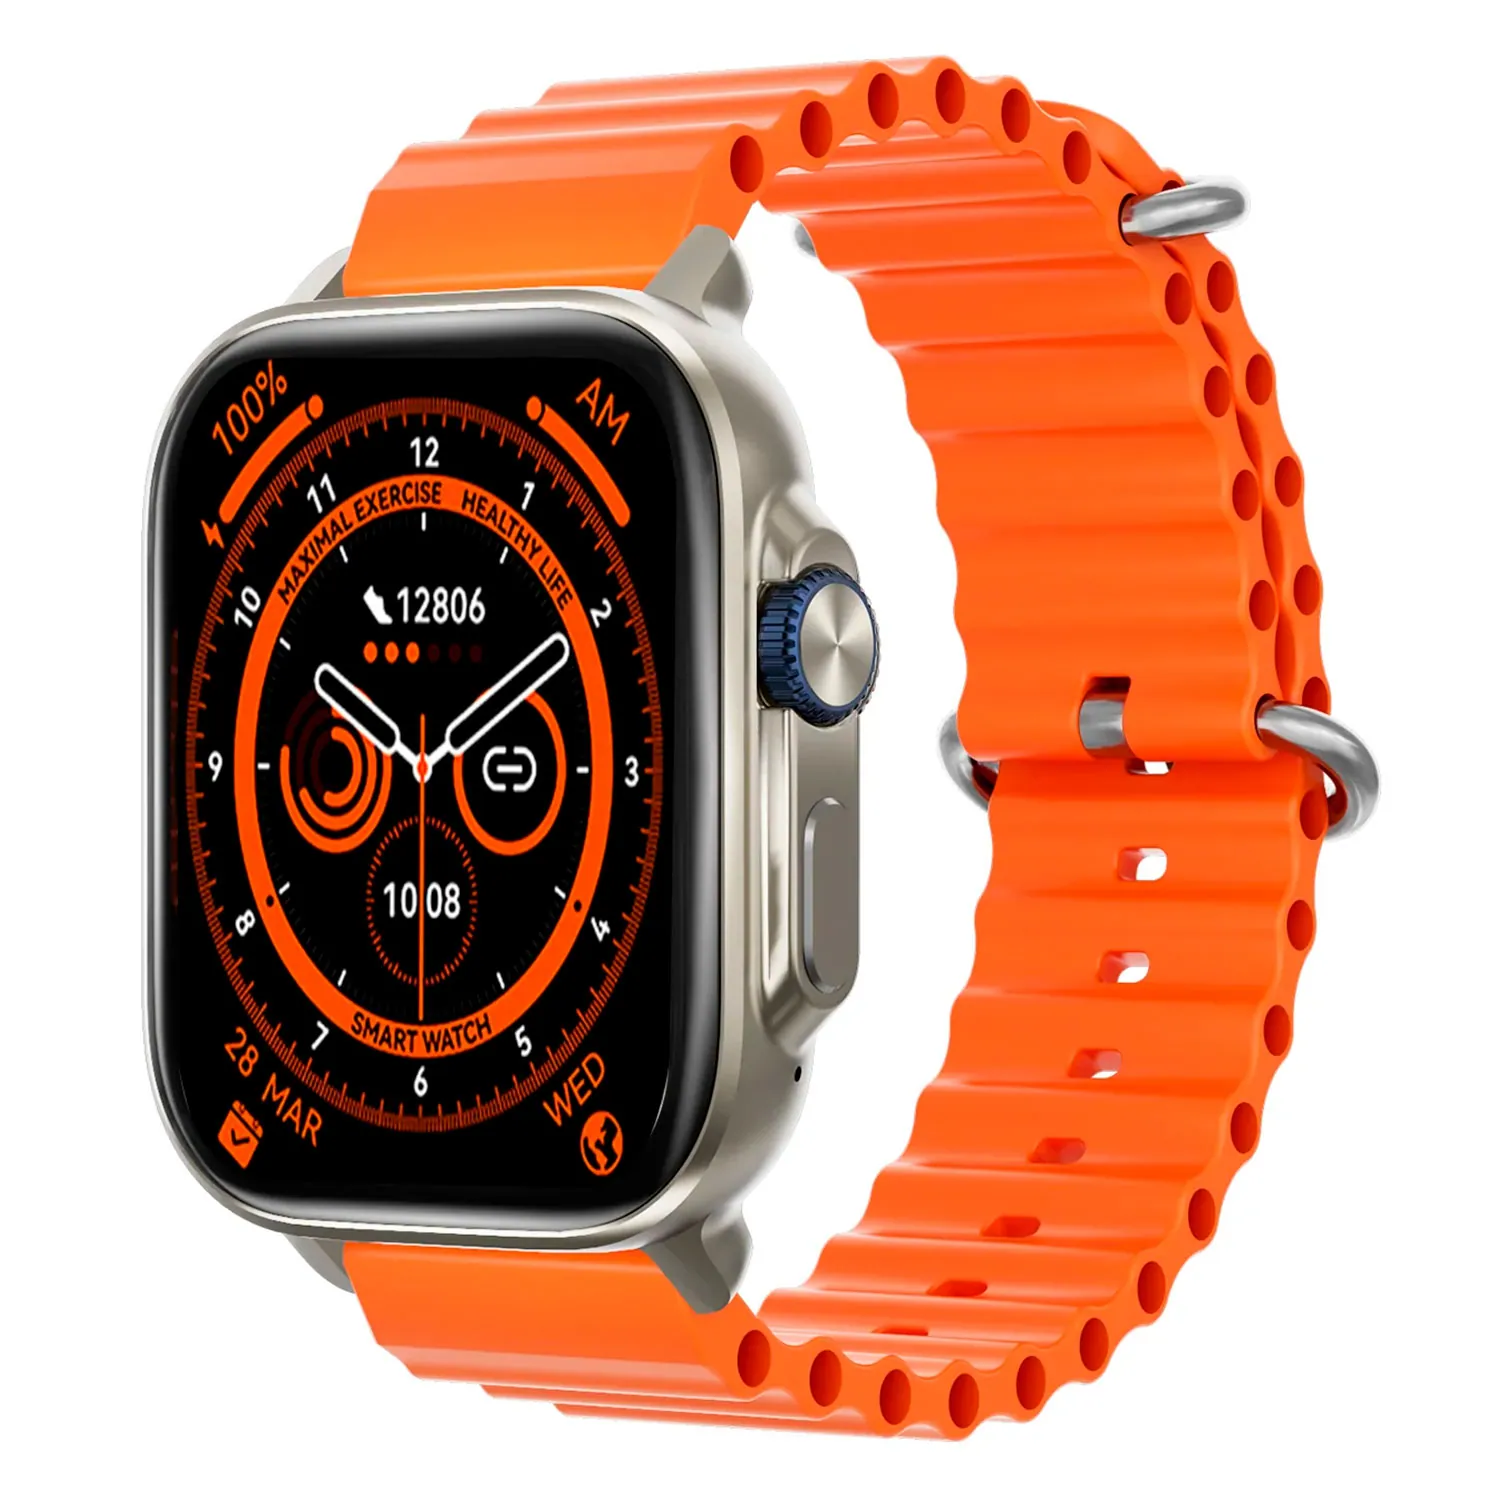 Udfine Watch Gear Smartwatch – Orange Color